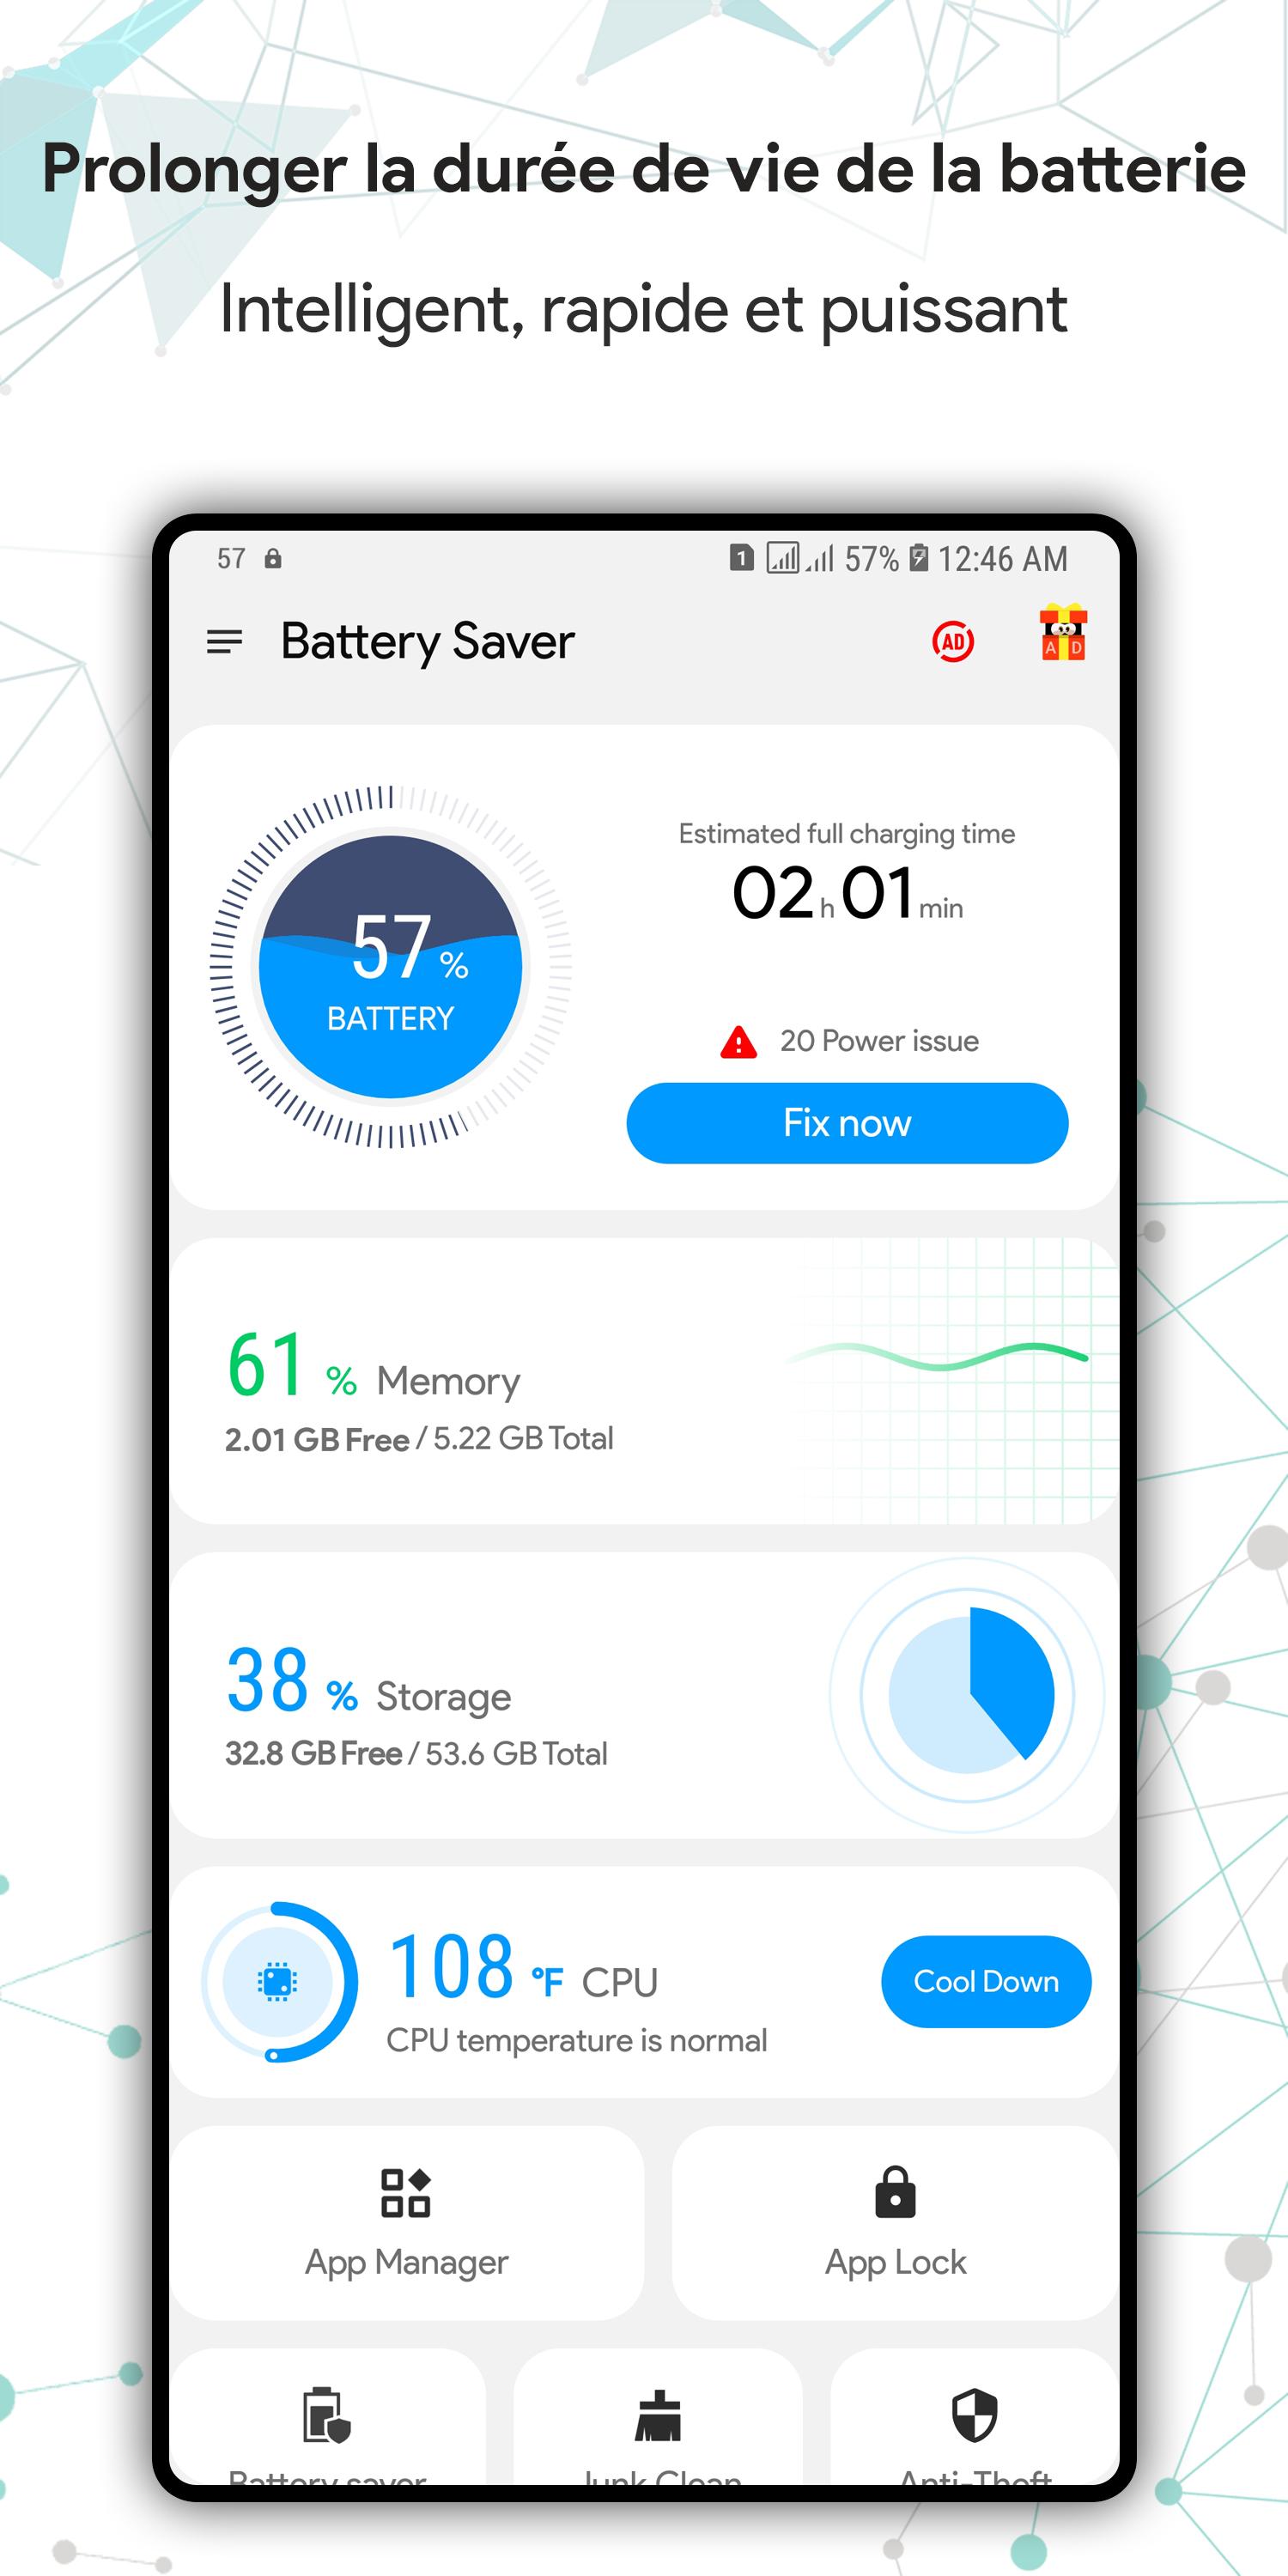 Battery Saver, Nettoyage Cache APK pour Android Télécharger